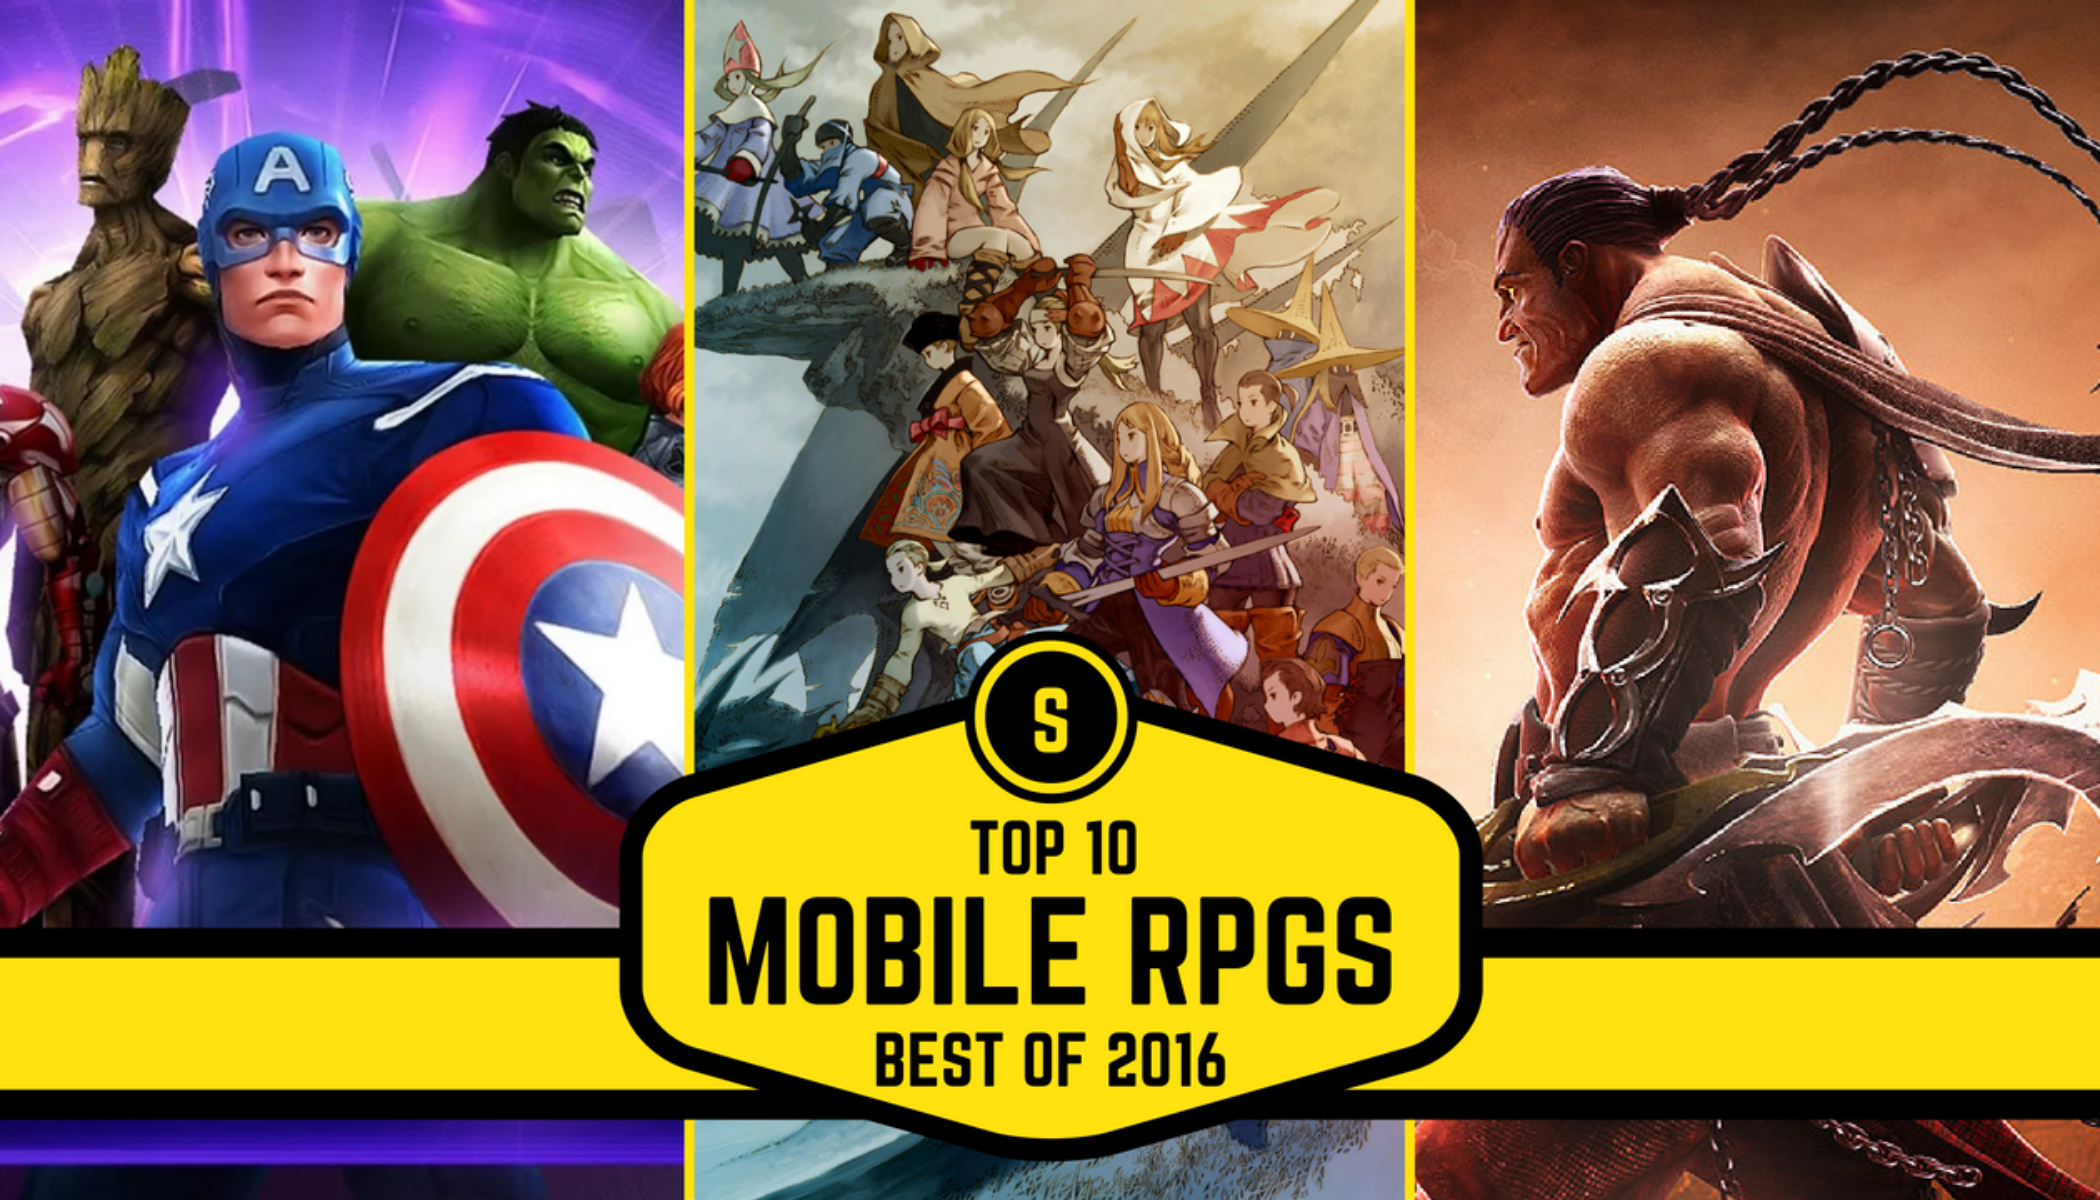 Top 10 Melhores Jogos de RPG Online de 2016 (Android e iOS